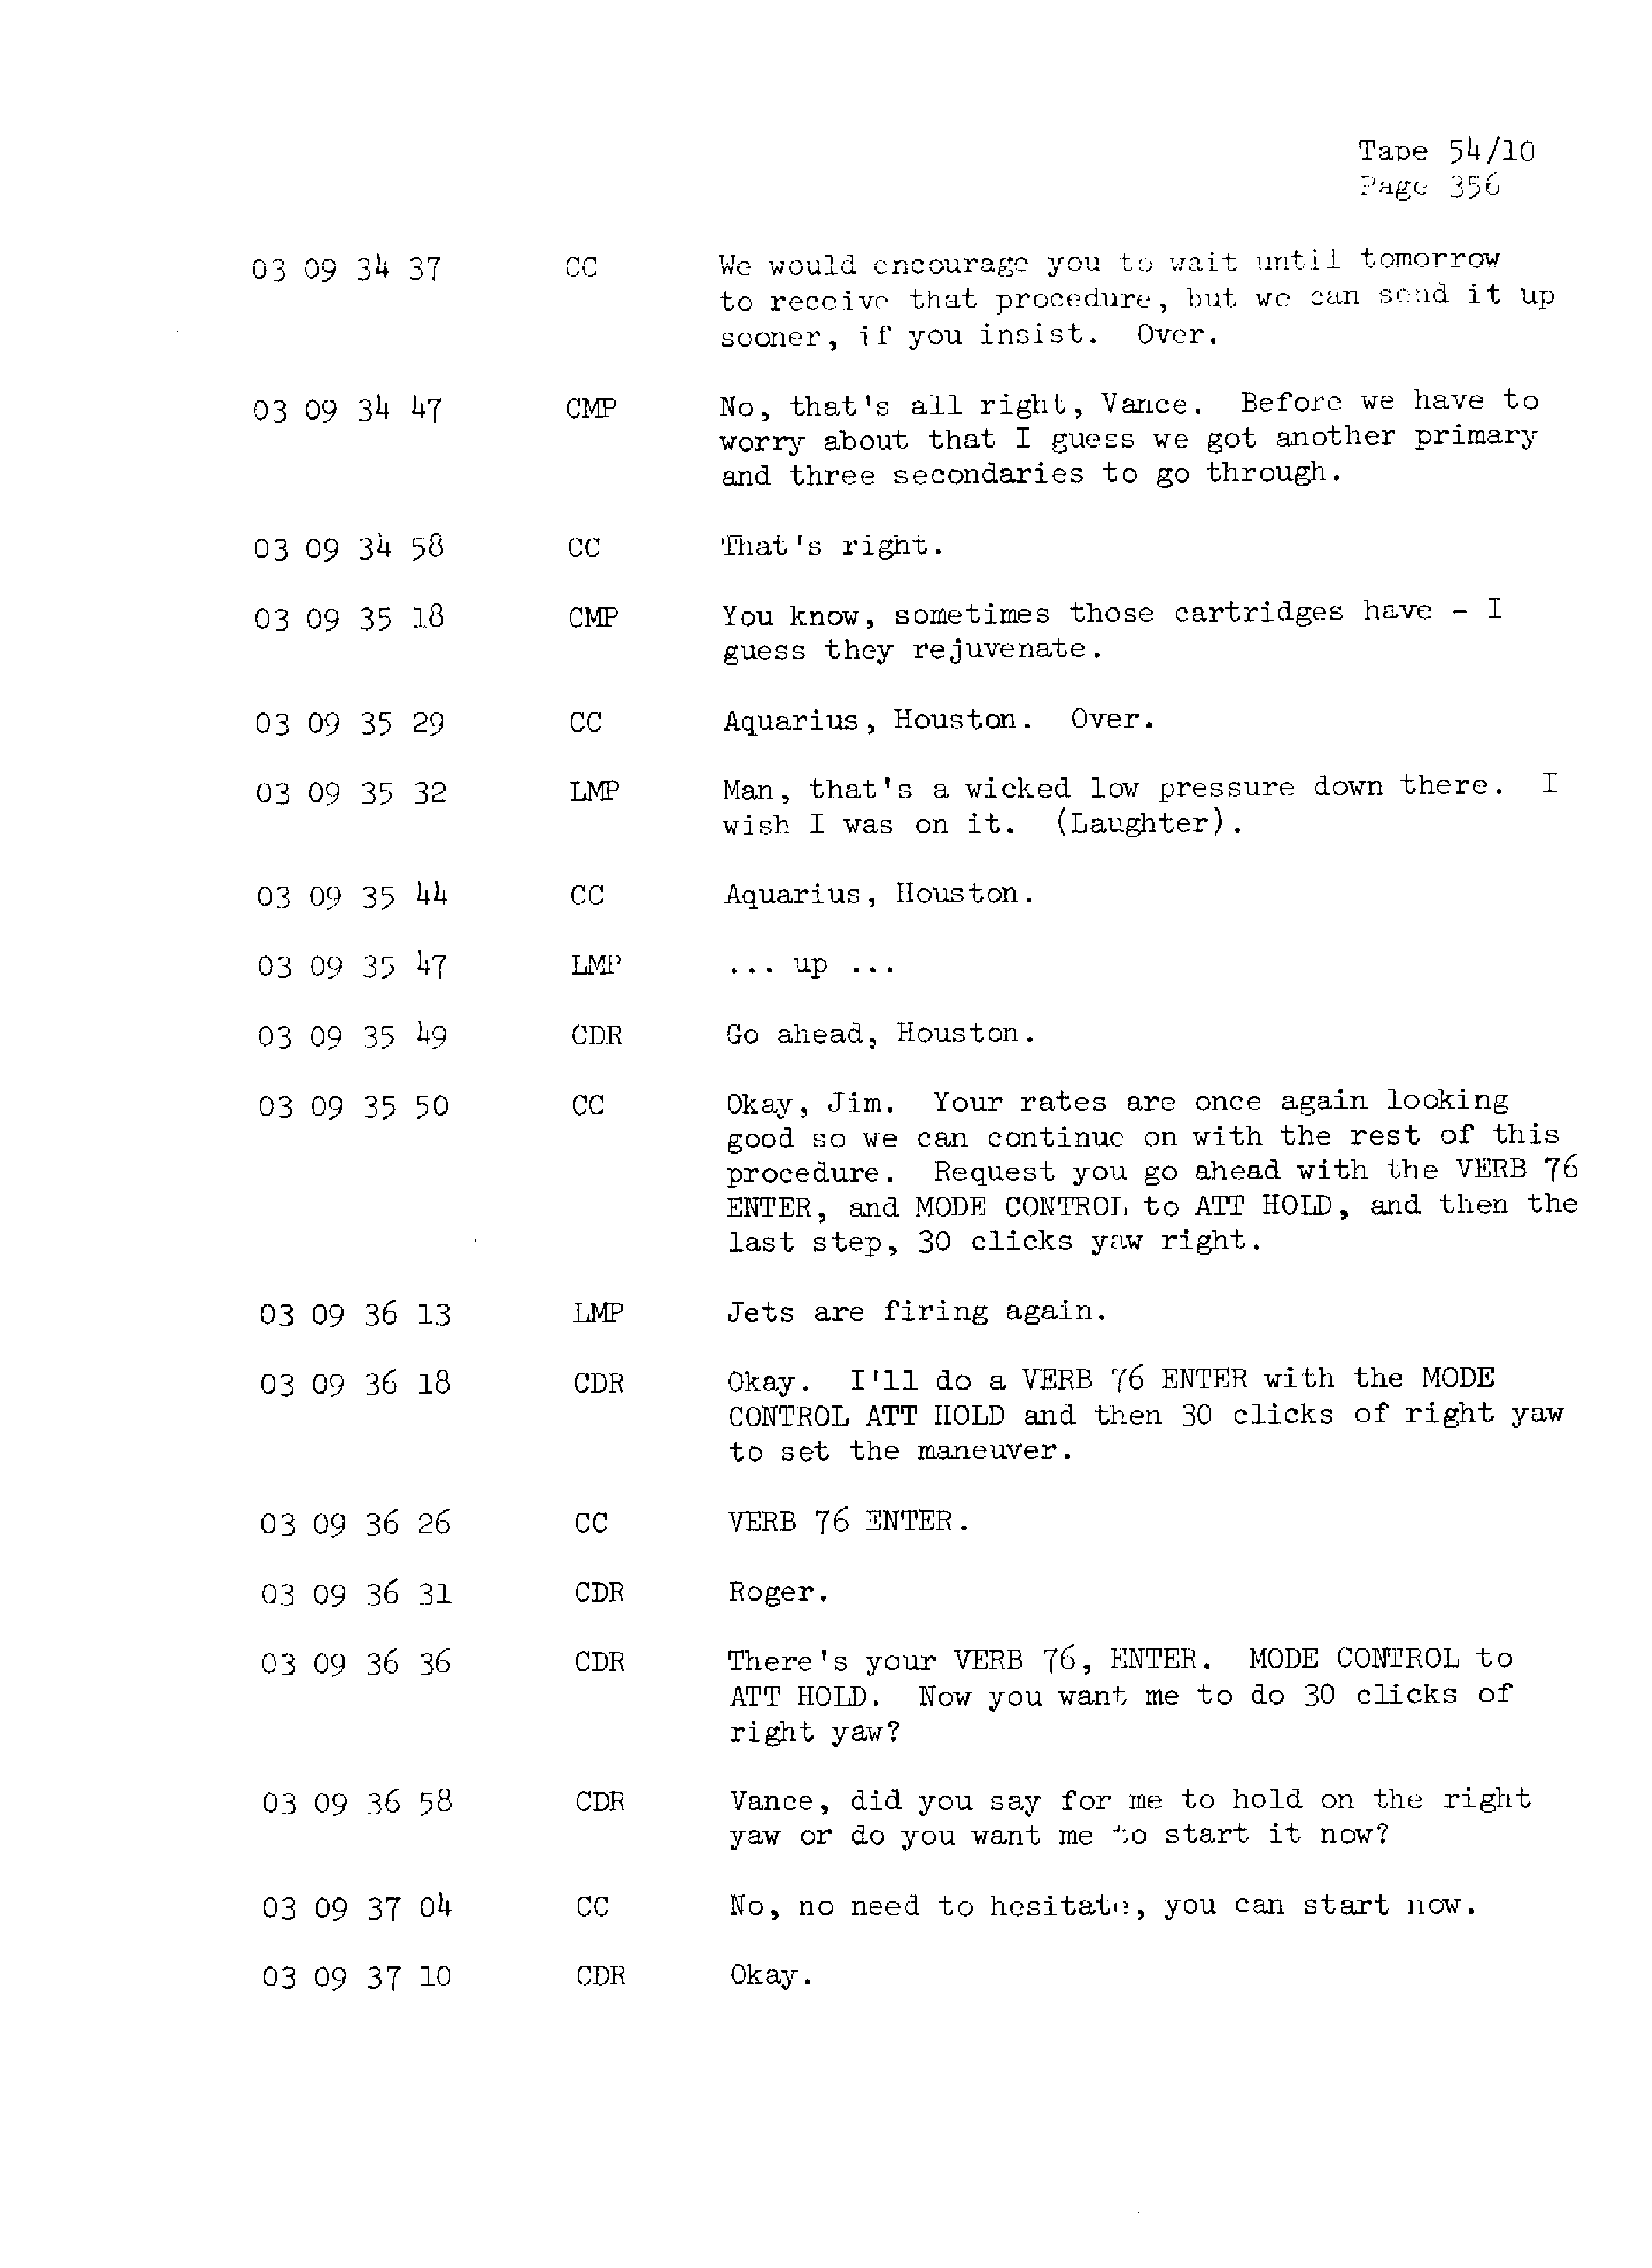 Page 363 of Apollo 13’s original transcript